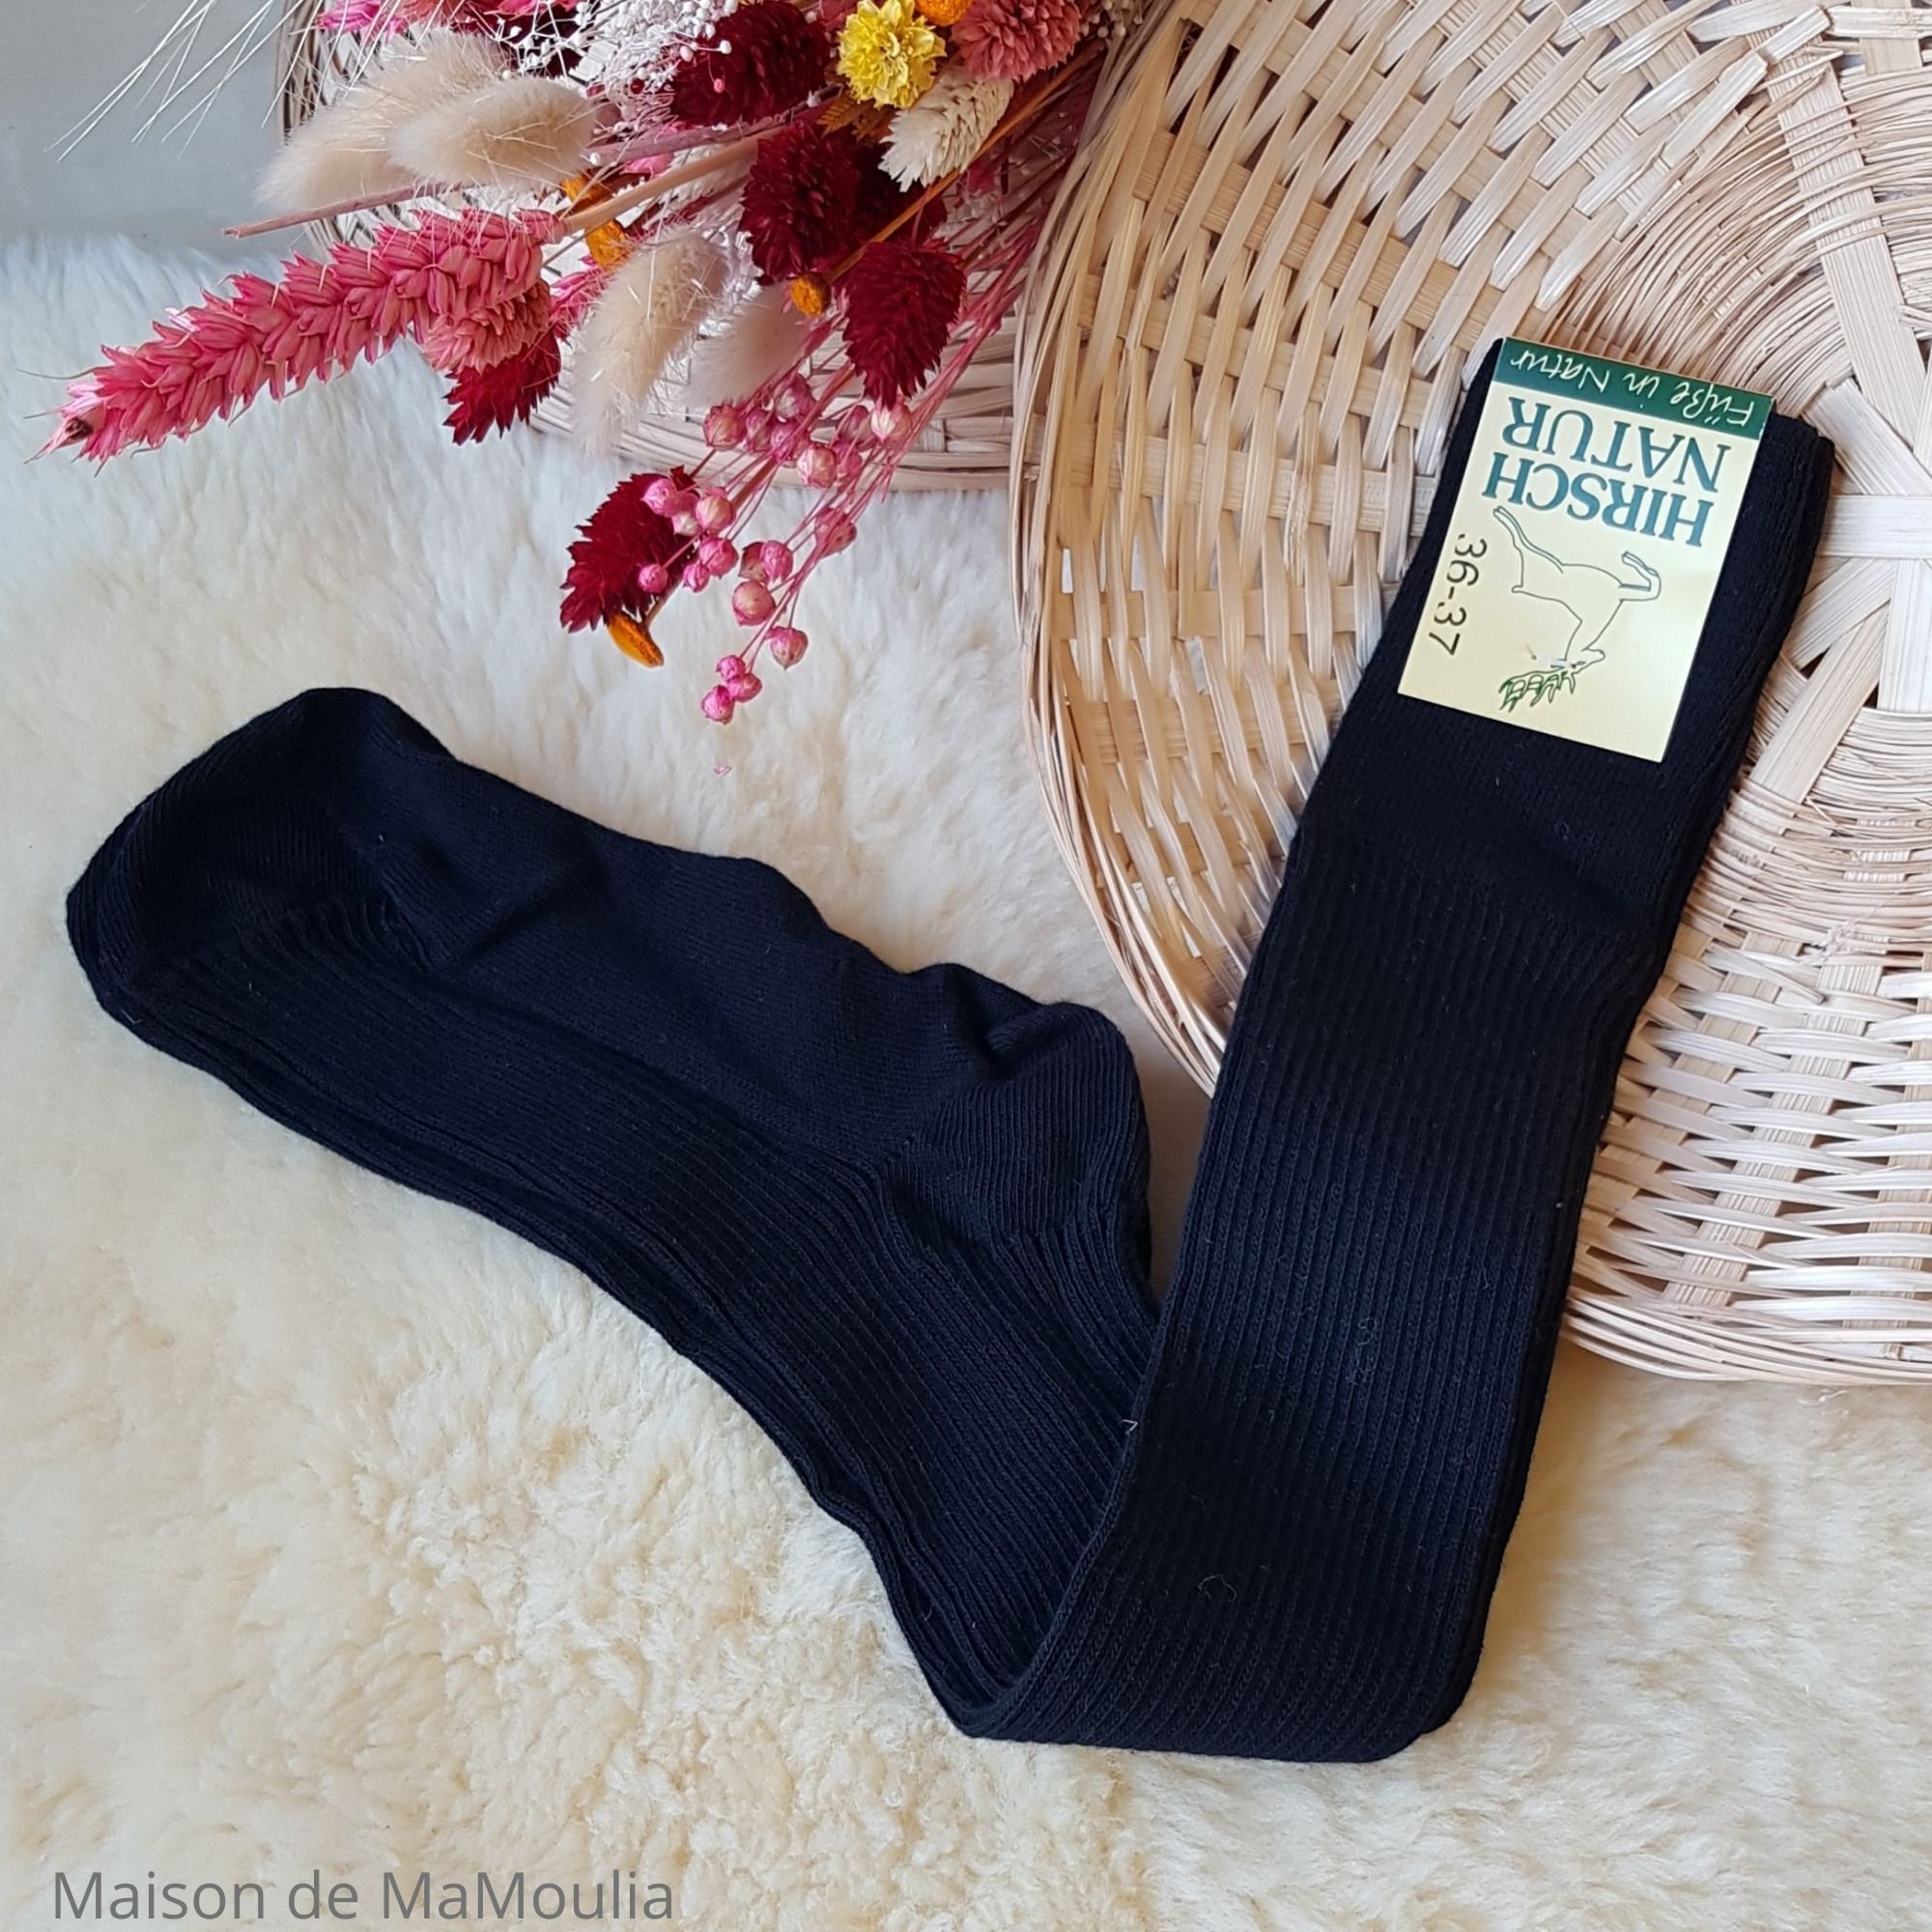 309-guetres-mi-bas-chaussettes-longues-laine-coton-bio-ecologique-hirsch-natur-maison-de-mamoulia-adulte-femme noir